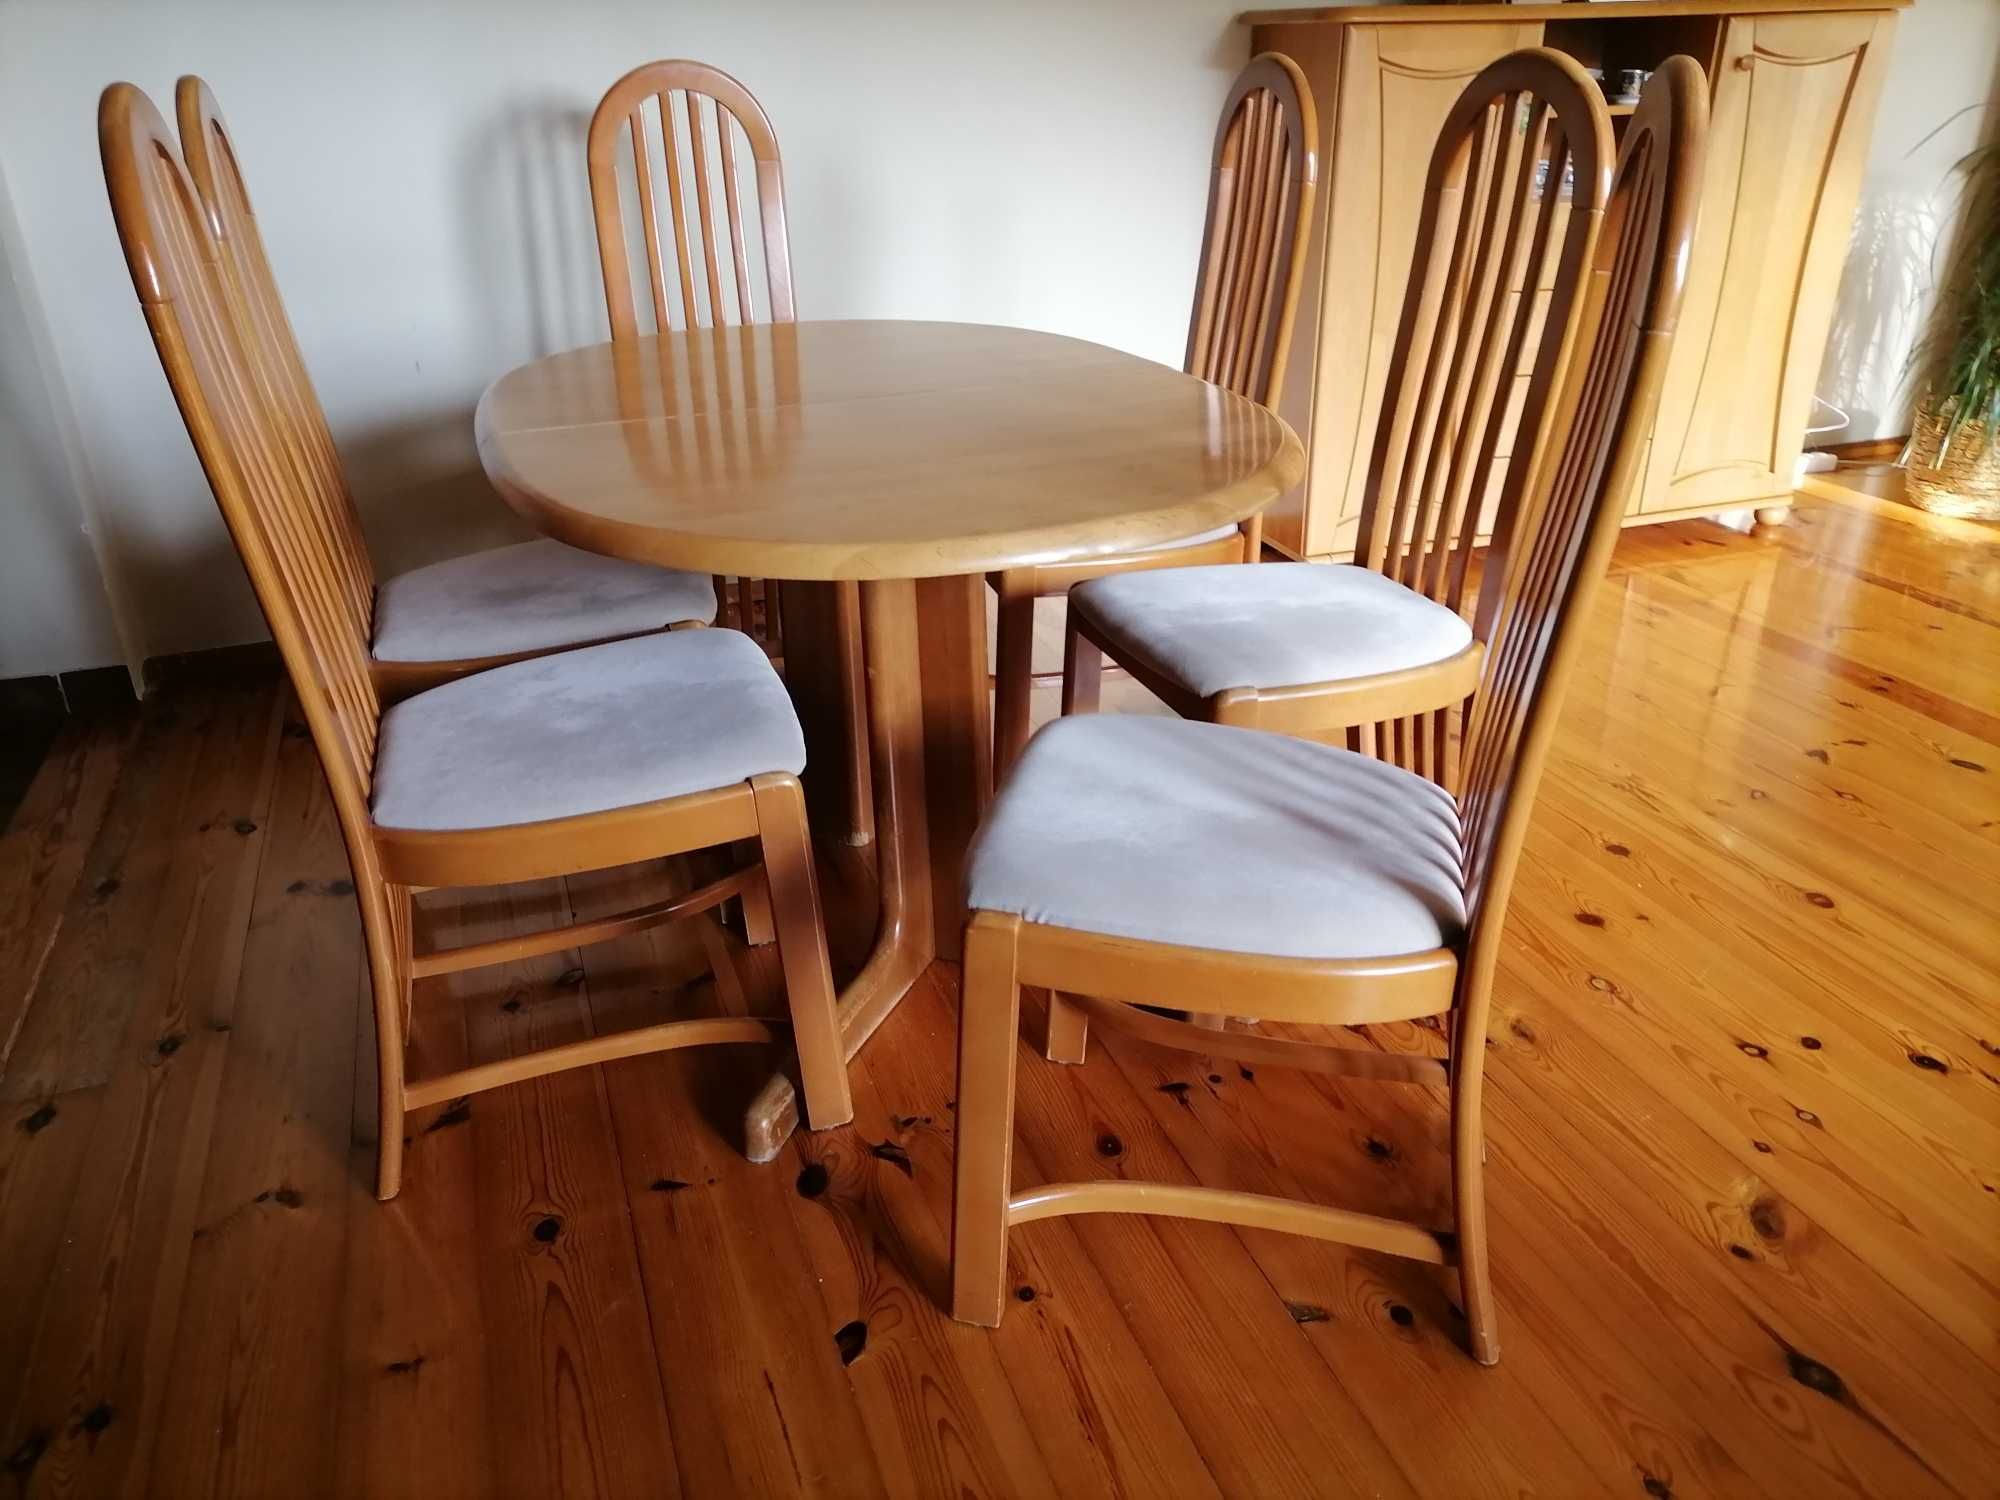 Stół bukowy bez krzeseł